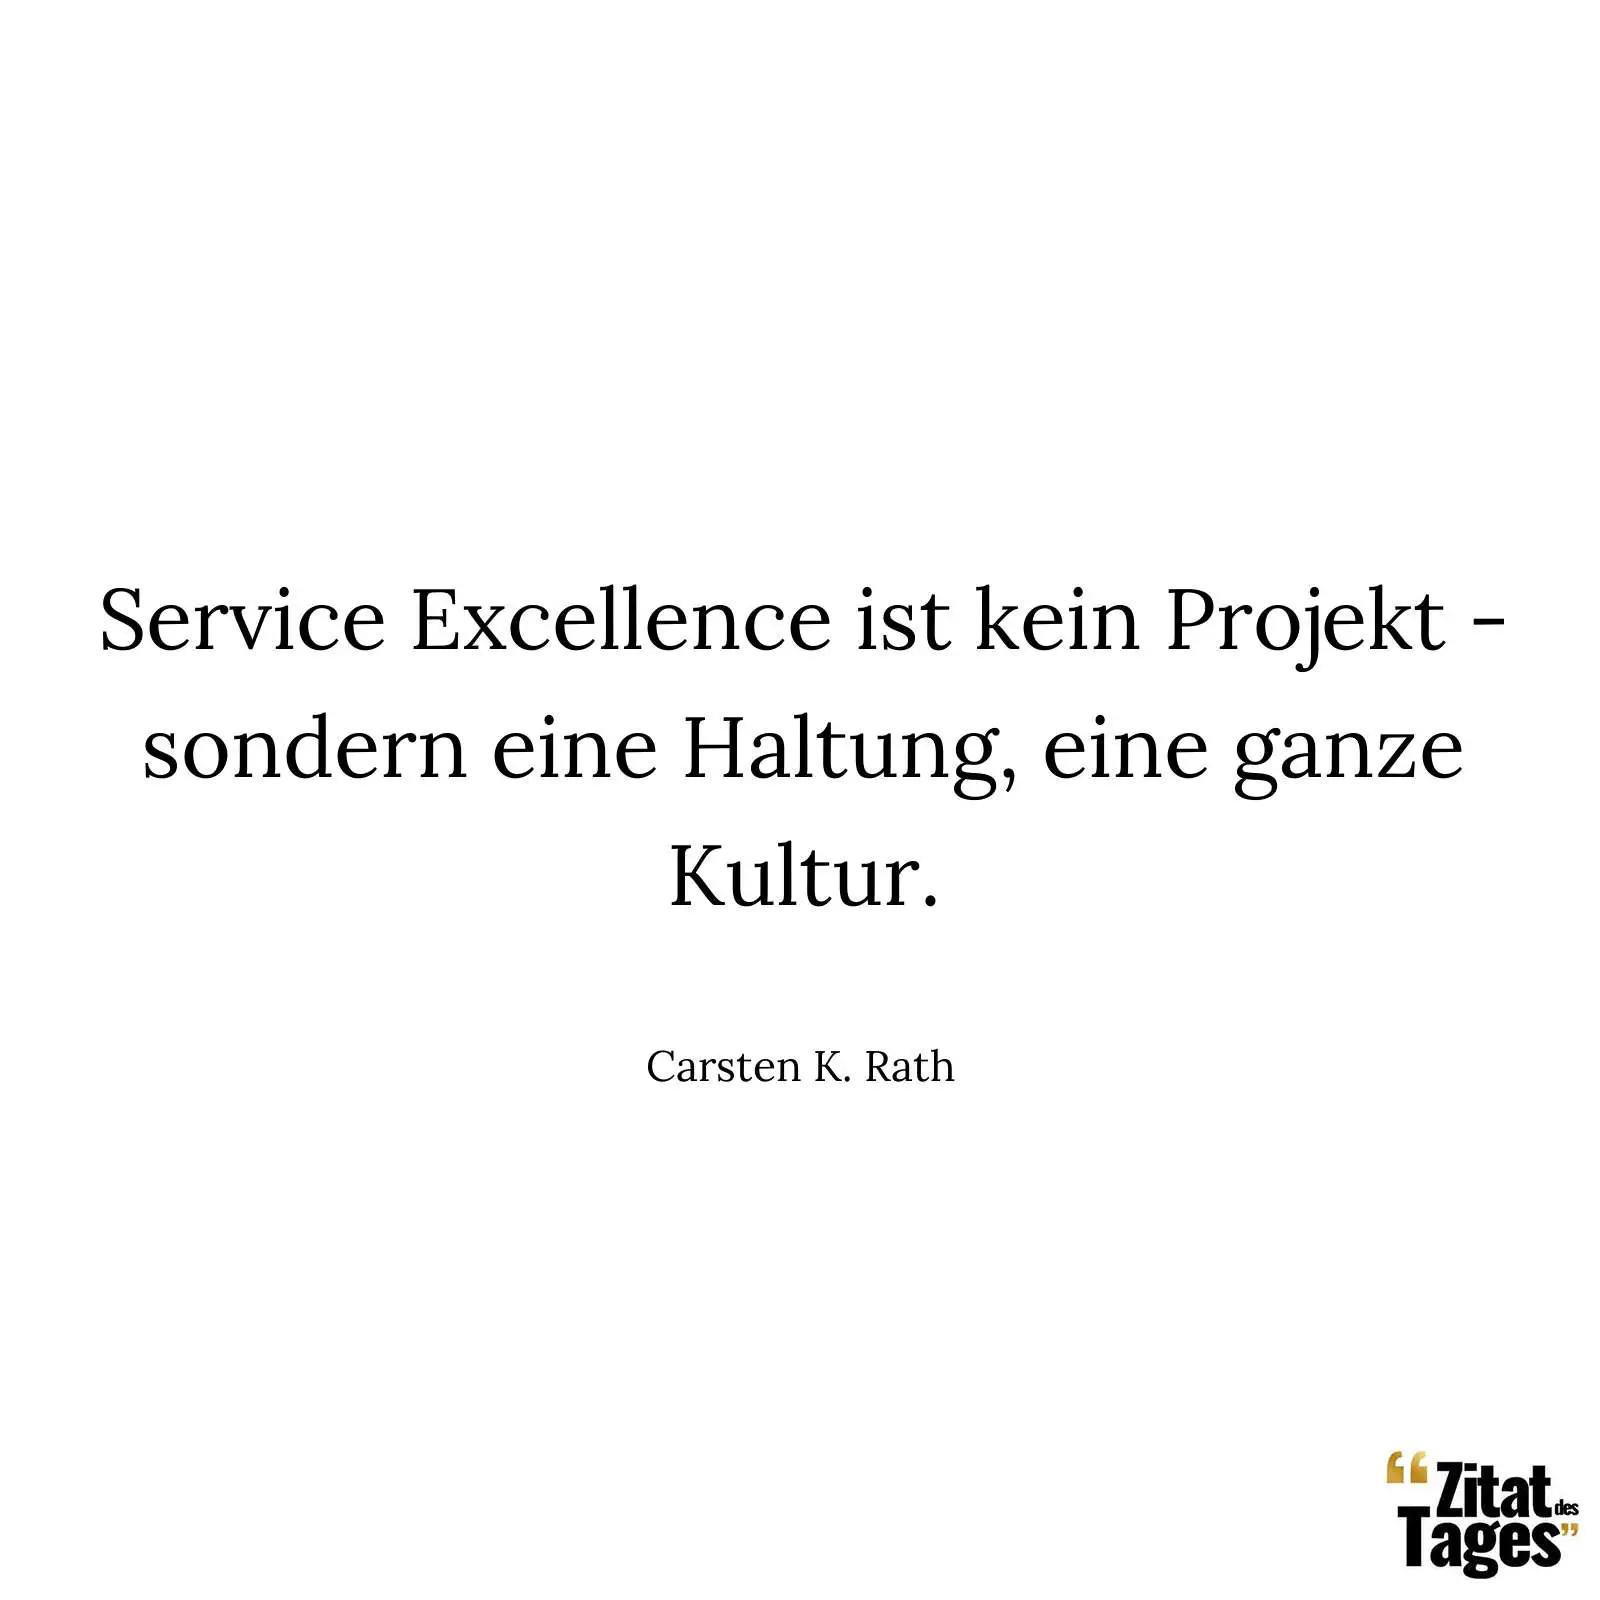 Service Excellence ist kein Projekt - sondern eine Haltung, eine ganze Kultur. - Carsten K. Rath